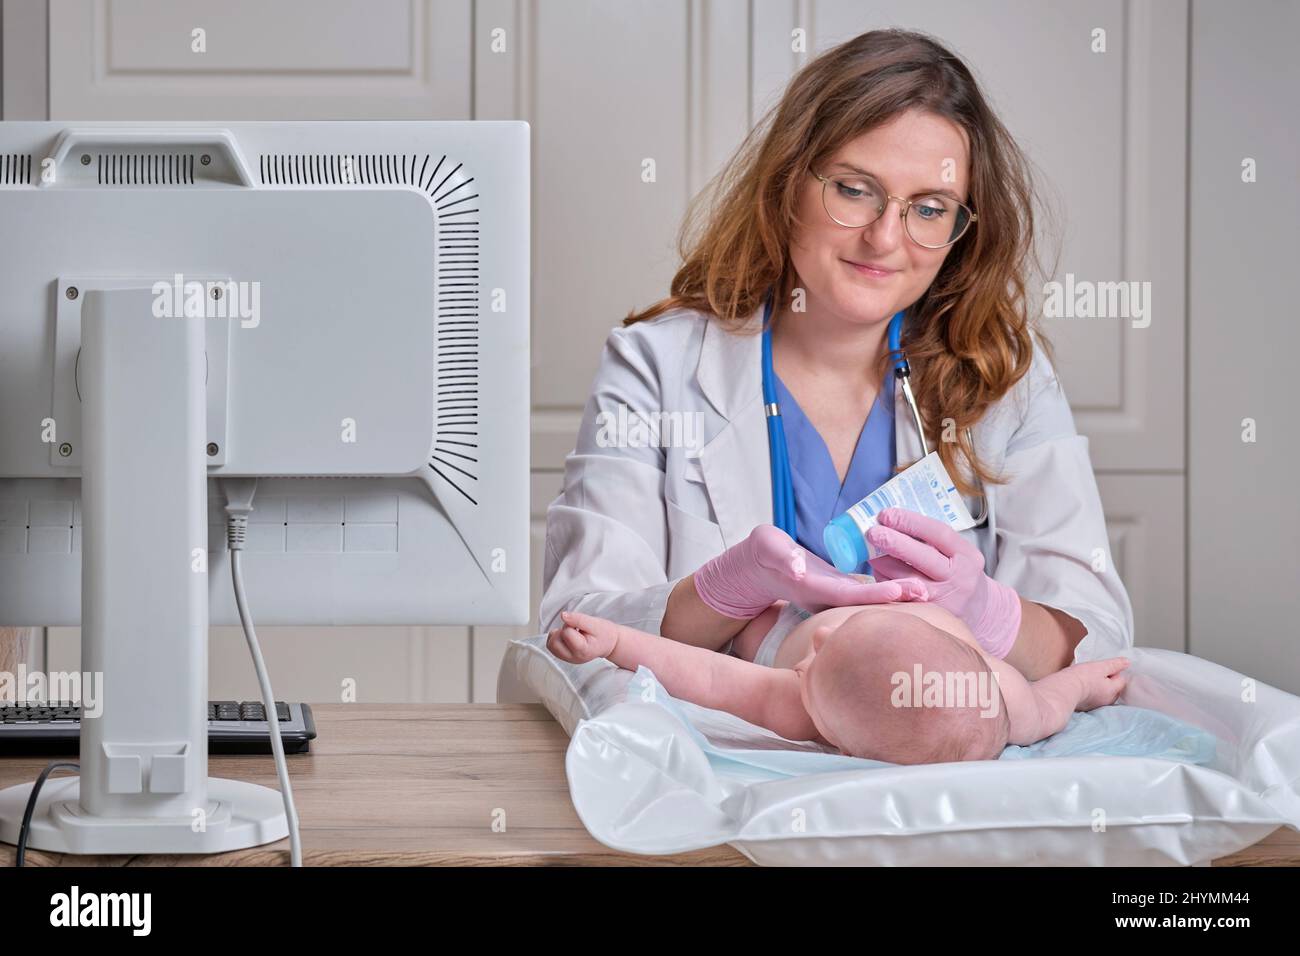 Il medico spalma una crema sulla pelle di un neonato. Infermiere dermatologo in uniforme Foto Stock